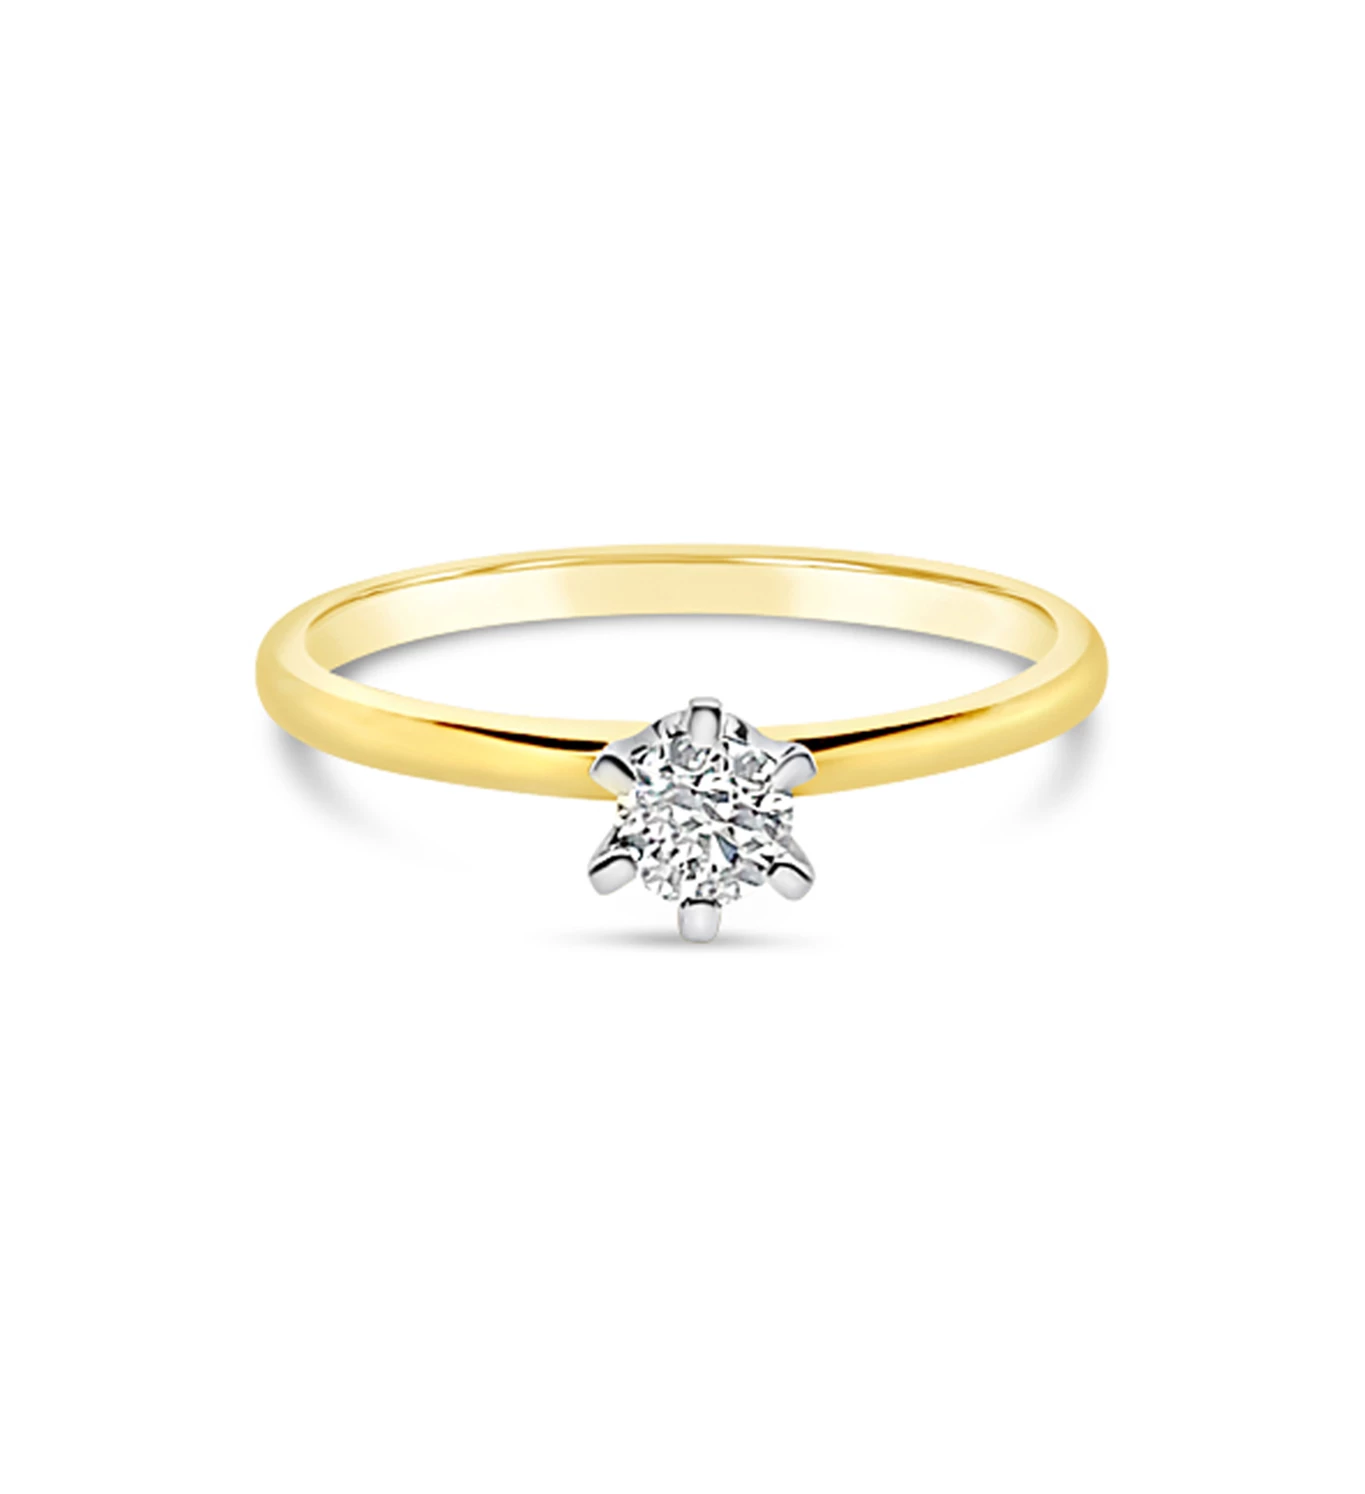 Light zlatni prsten s dijamantom